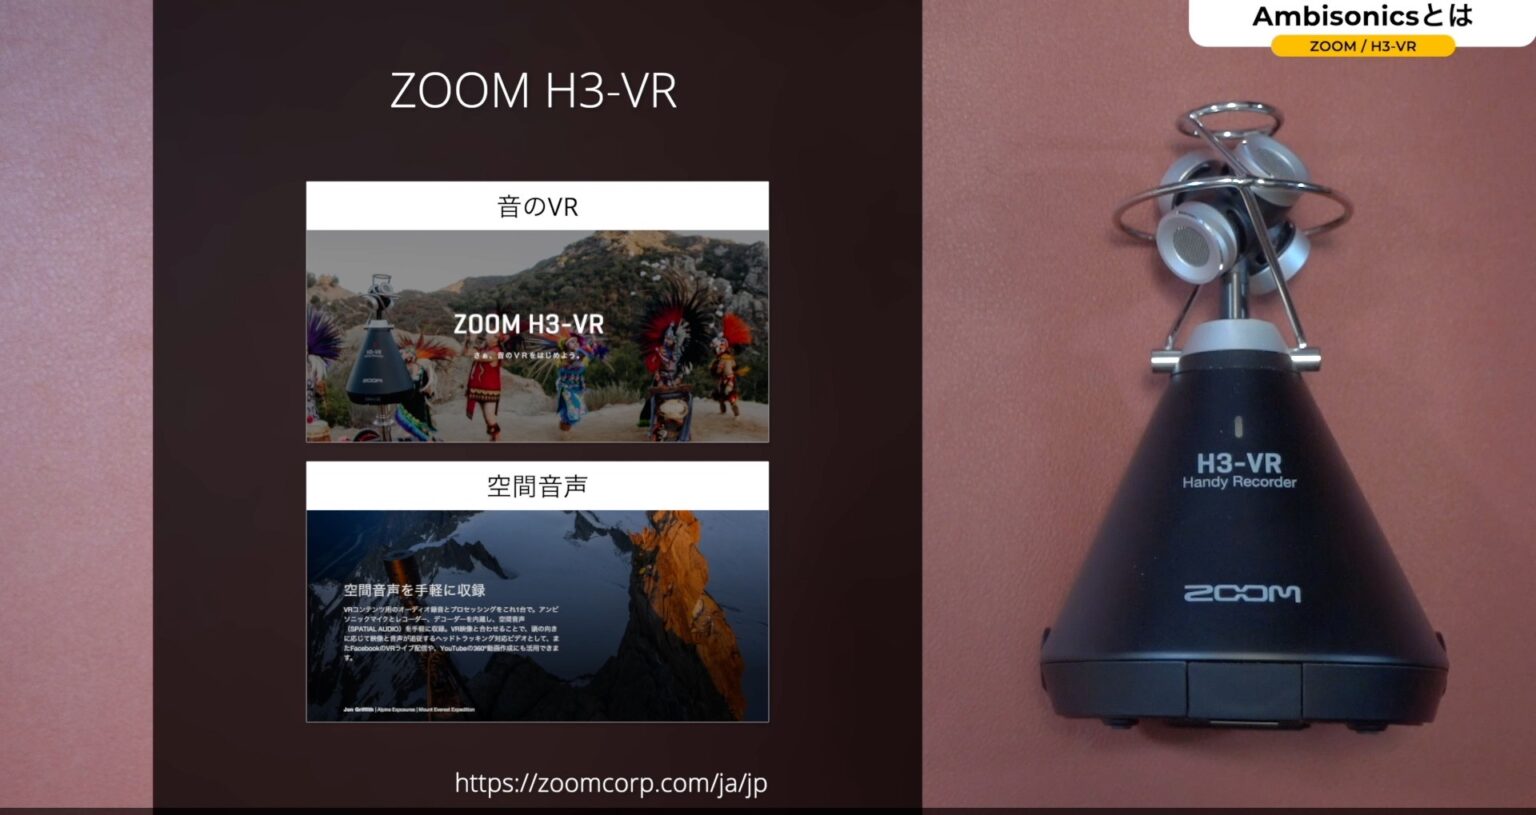 方向が自由自在!?「H3-VR」で録音した素材を「ZOOM Ambisonics Player」で操作する。【#2/アンビソニックス